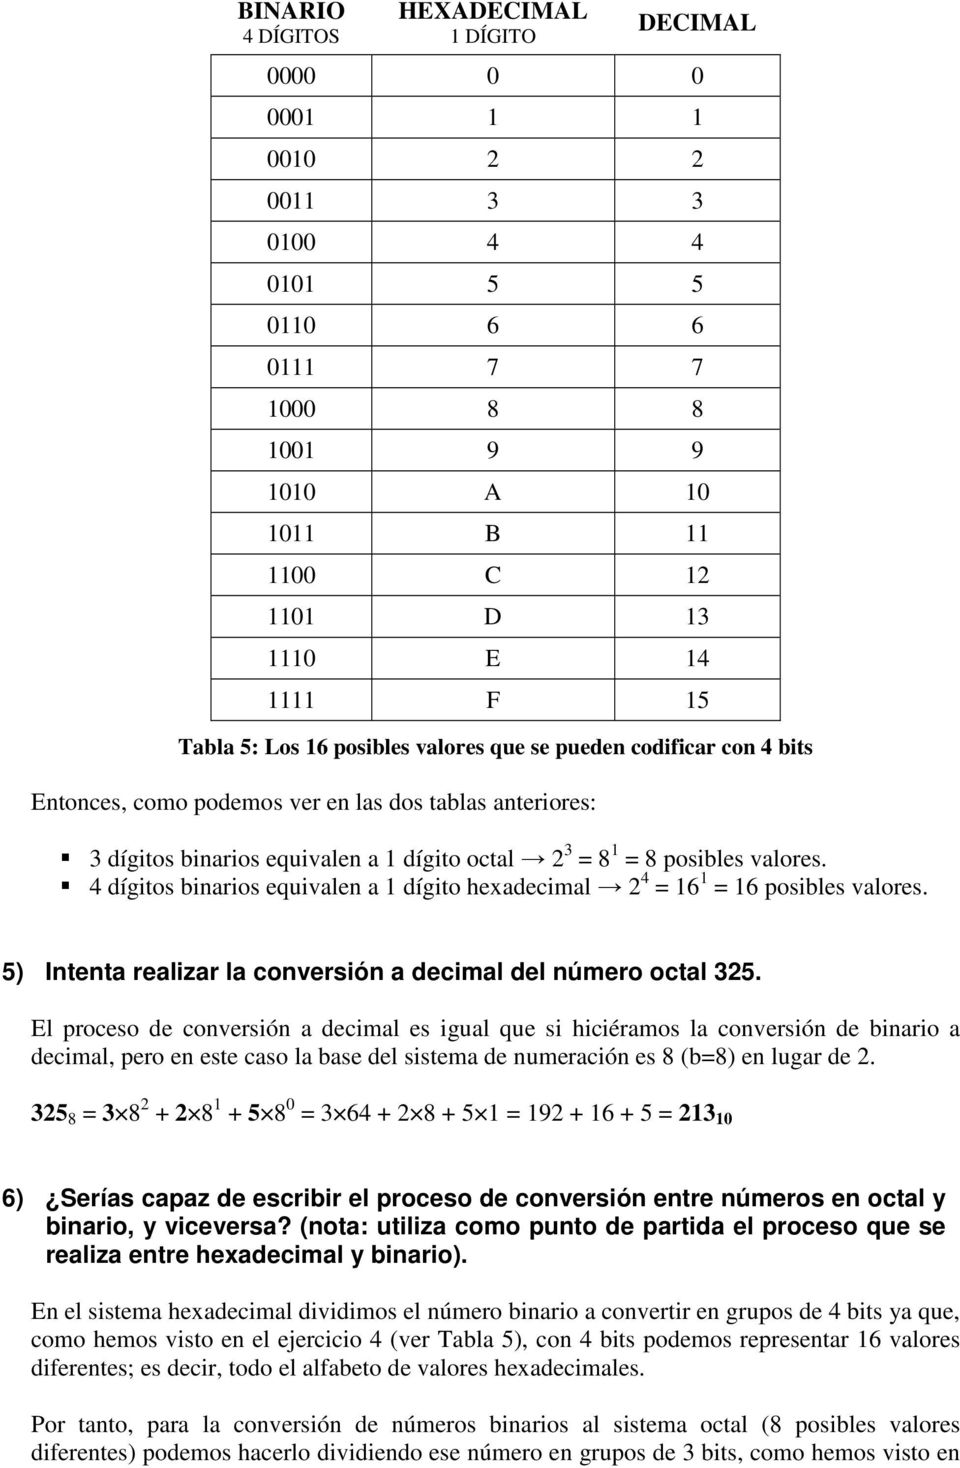 4 dígitos binarios equivalen a 1 dígito hexadecimal 2 4 = 16 1 = 16 posibles valores. 5) Intenta realizar la conversión a decimal del número octal 325.